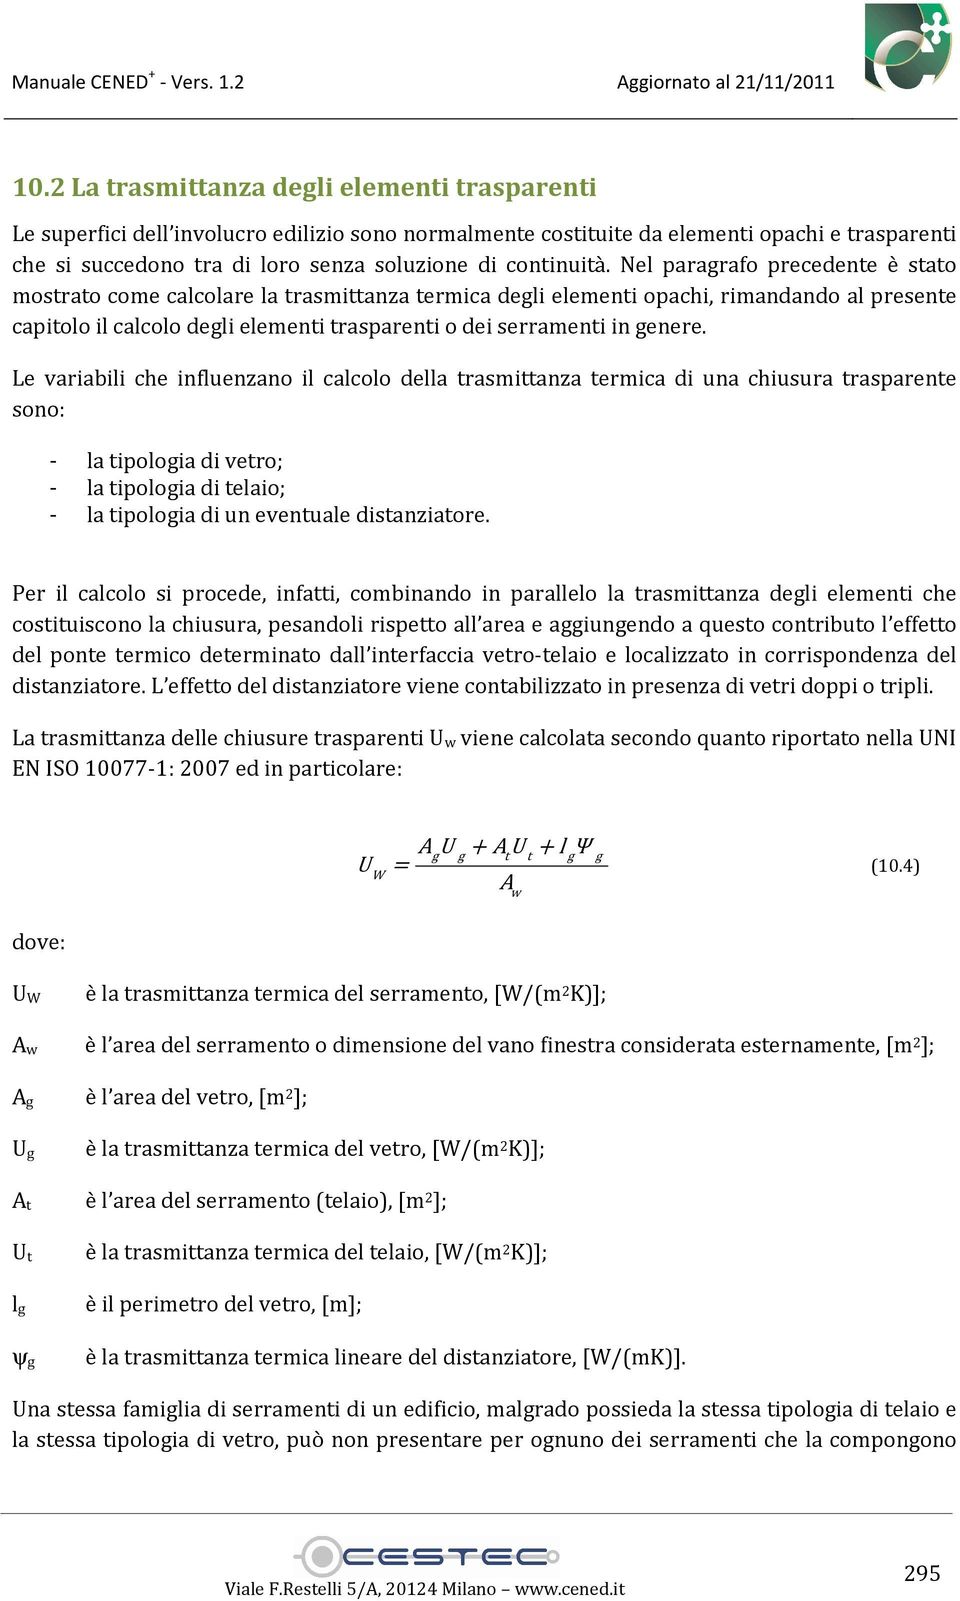 Nel paragrafo precedente è stato mostrato come calcolare la trasmittanza termica degli elementi opachi, rimandando al presente capitolo il calcolo degli elementi trasparenti o dei serramenti in